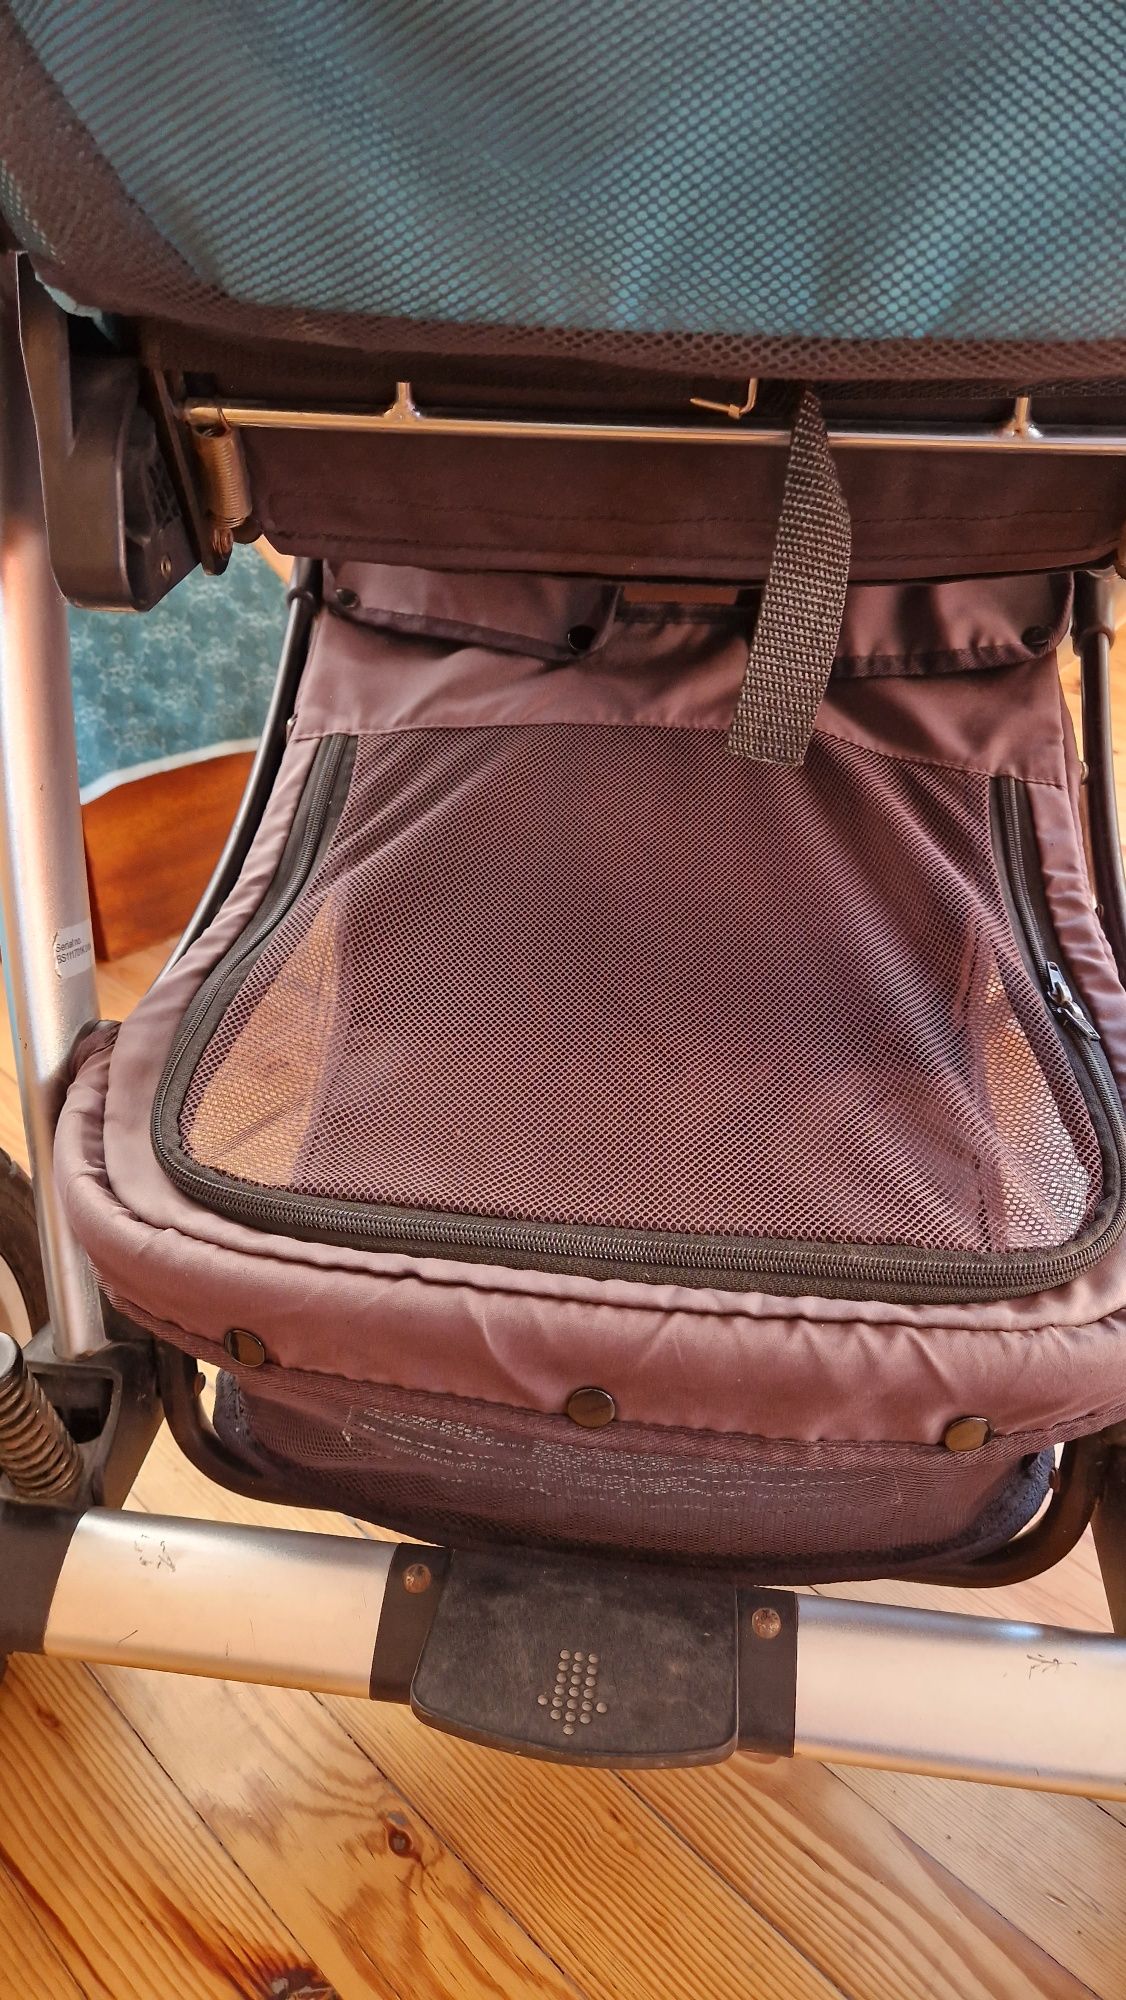 Детска количка 2в1 Baby Design